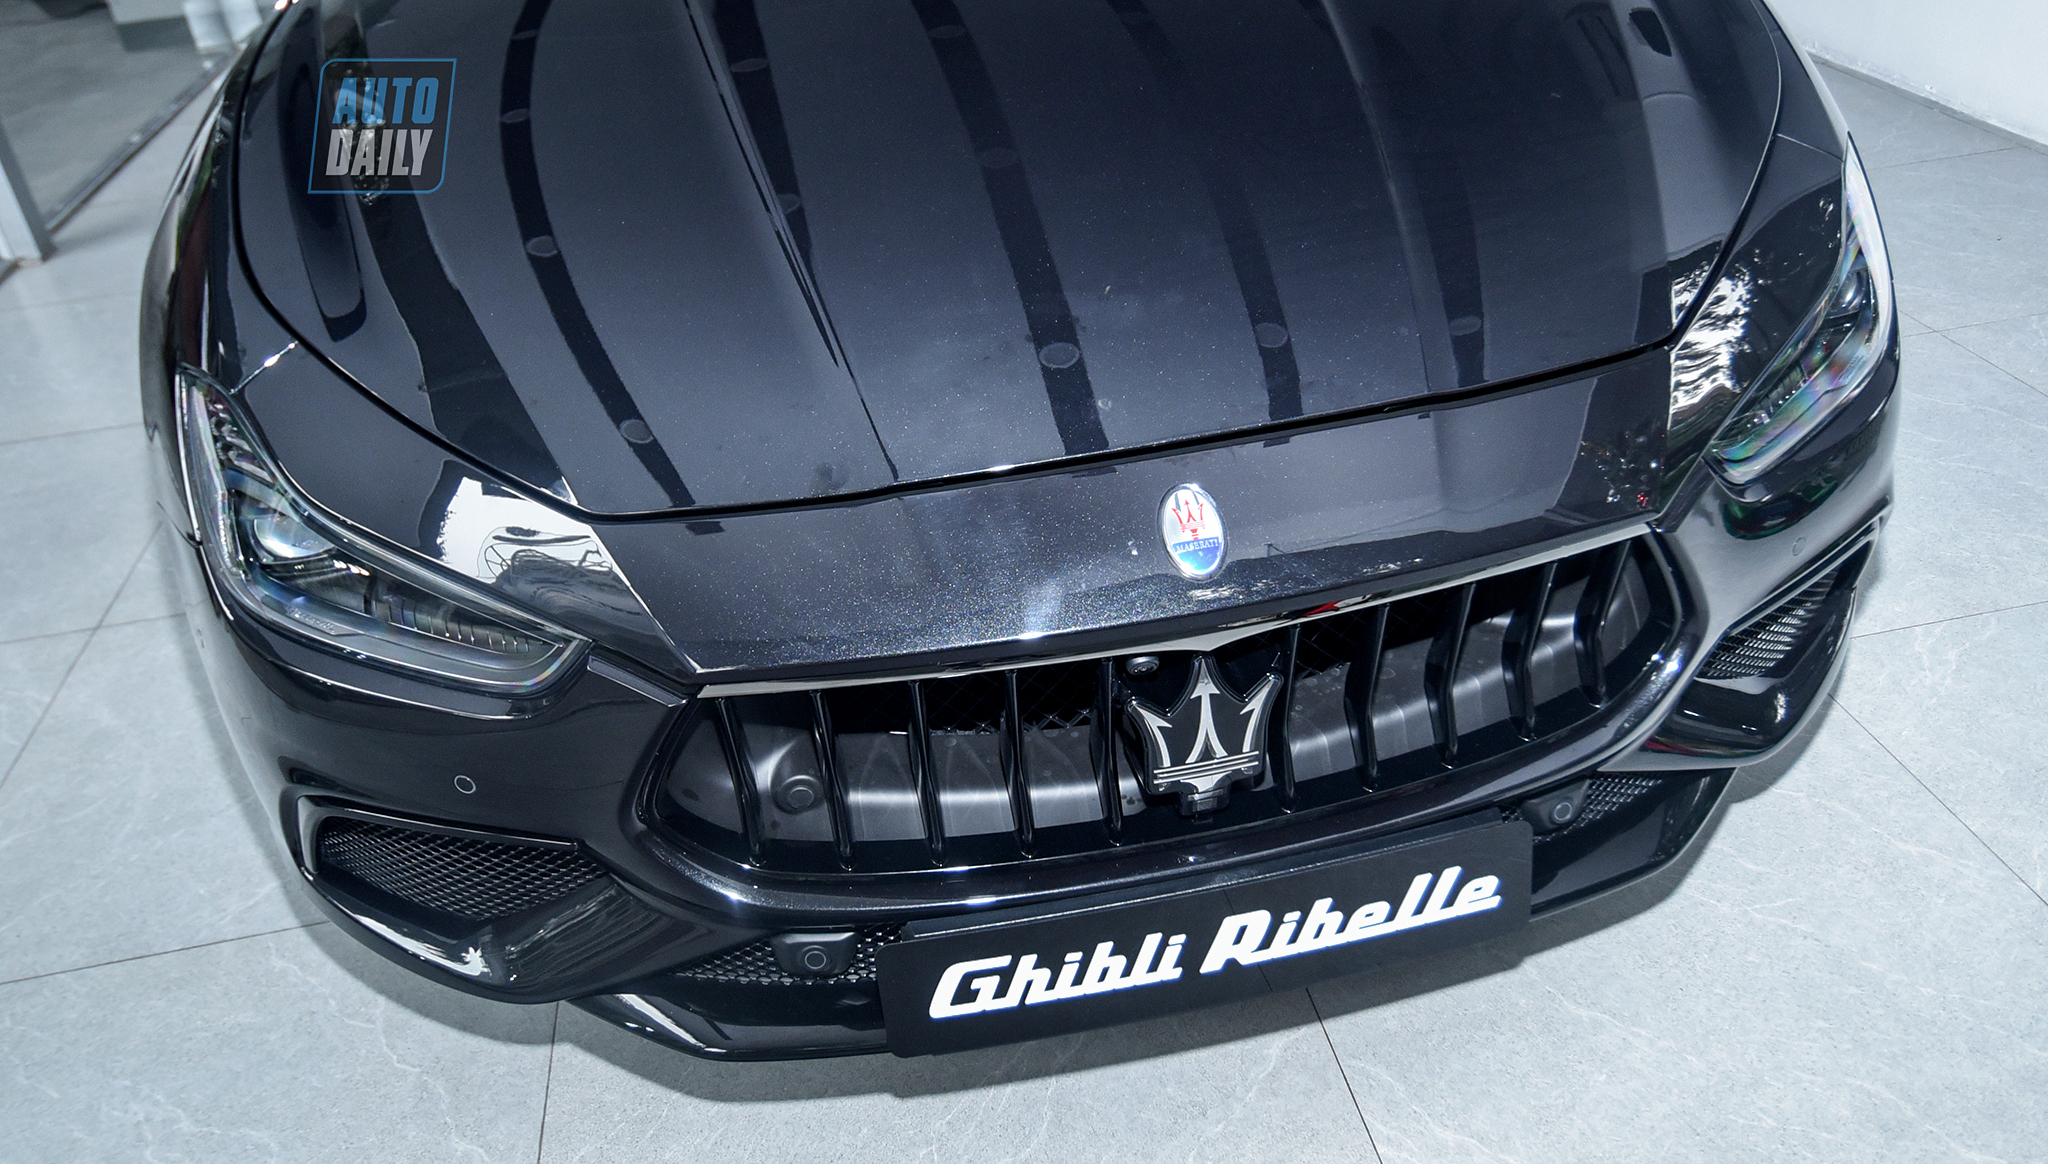 Chiêm ngưỡng Maserati Ghibli Rebelle chỉ một chiếc duy nhất về Việt Nam dsc-3283-copy.jpg